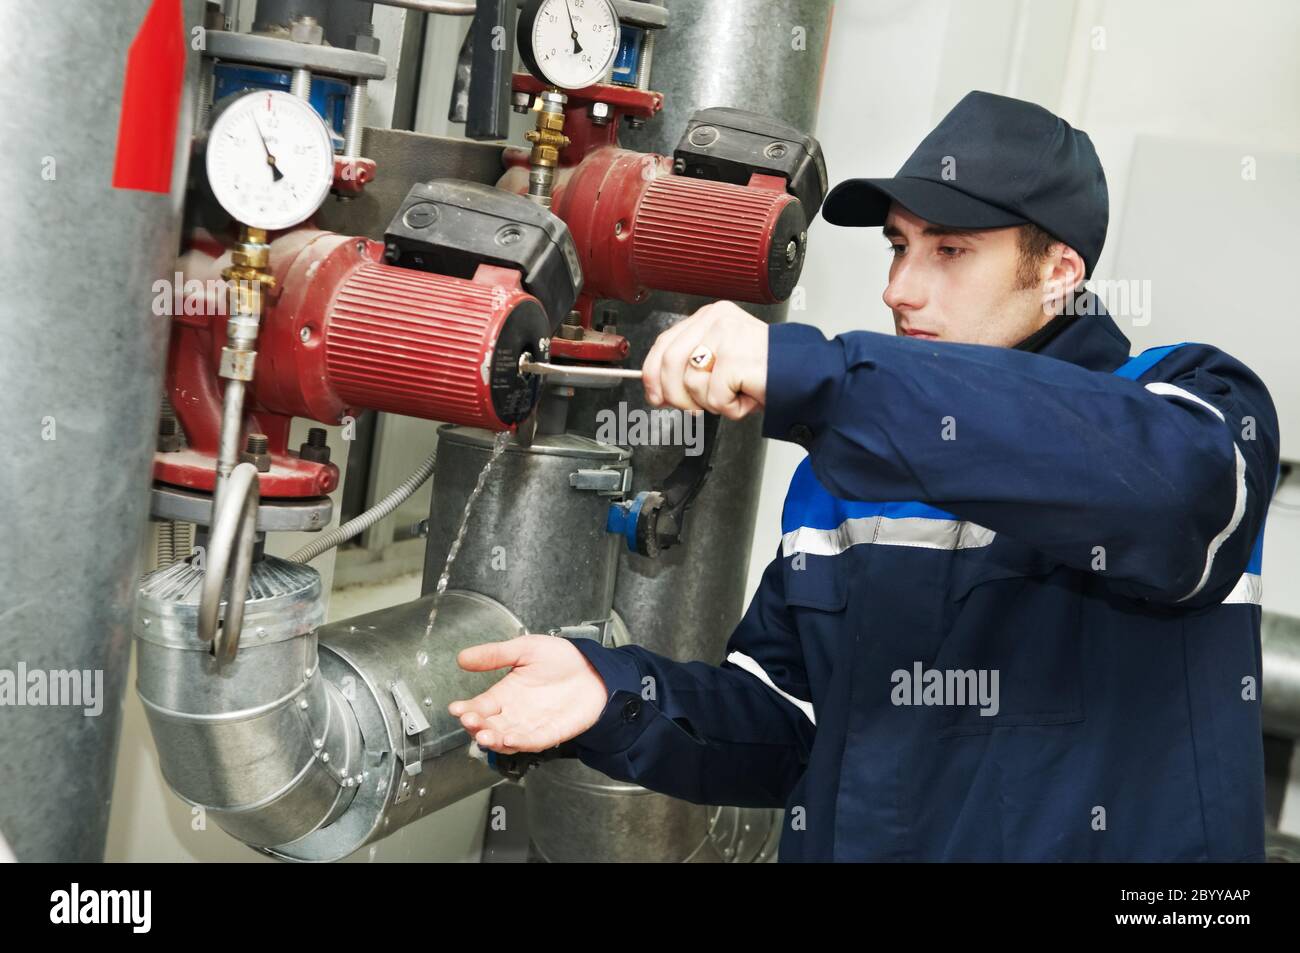 heating engineer repairman in boiler room Stock Photo